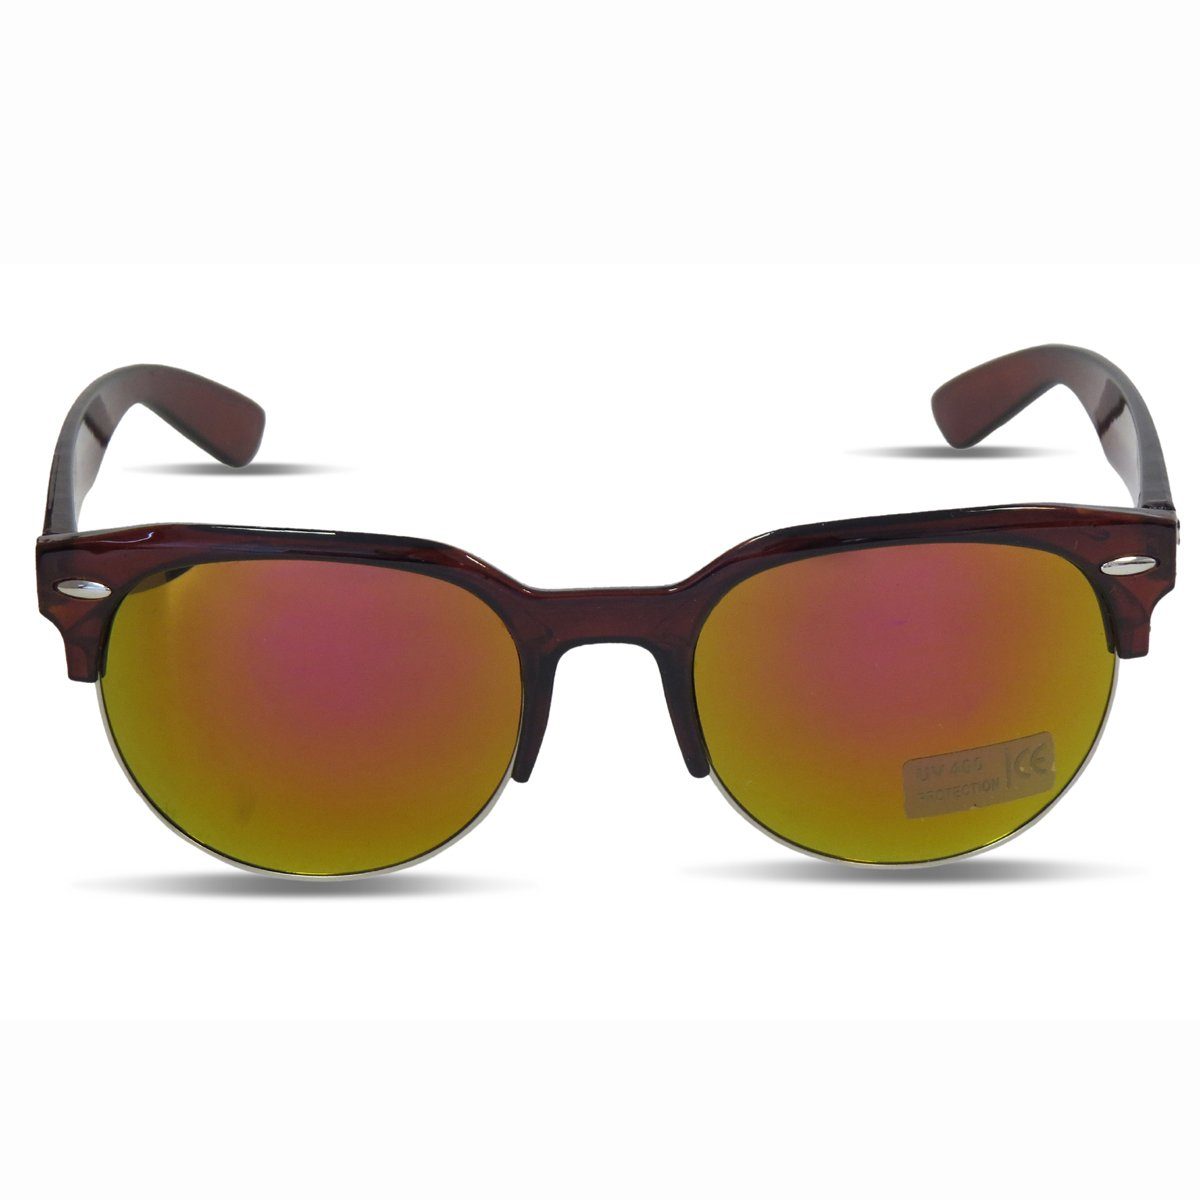 Sonia Originelli Sonnenbrille Sonnenbrille Modern Verspiegelt Klassisch Sommer Onesize braun-orange